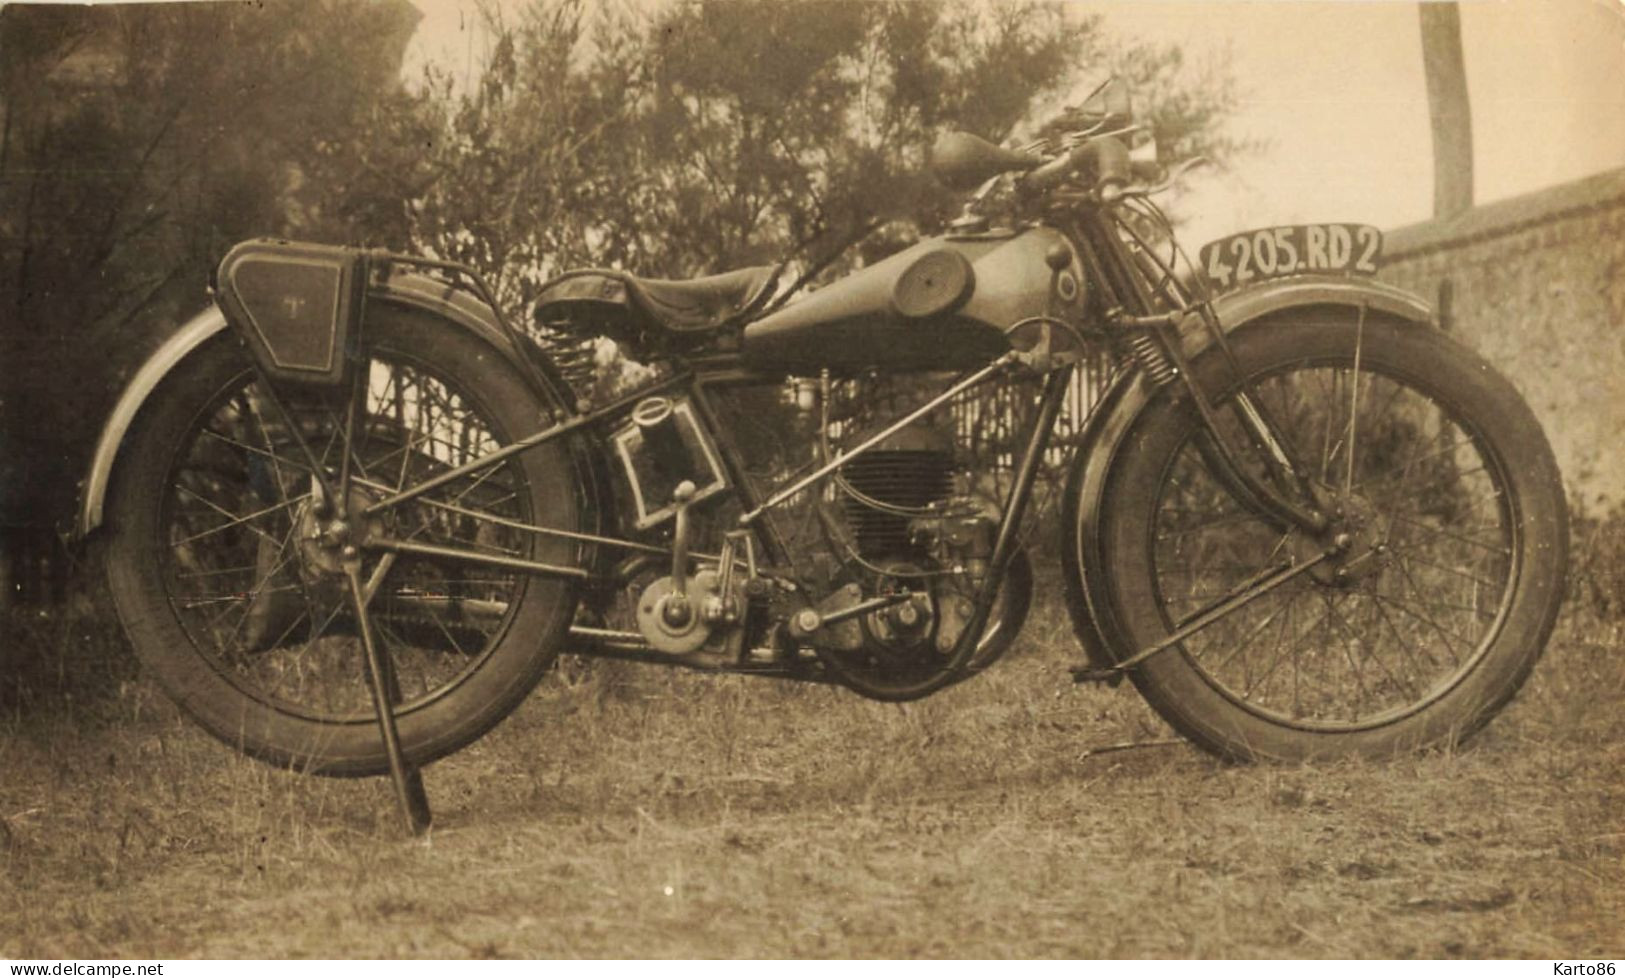 Moto Ancienne De Marque Modèle Type ? * Motos Motocyclette Transport * Photo Ancienne 16x9.5cm - Motorräder